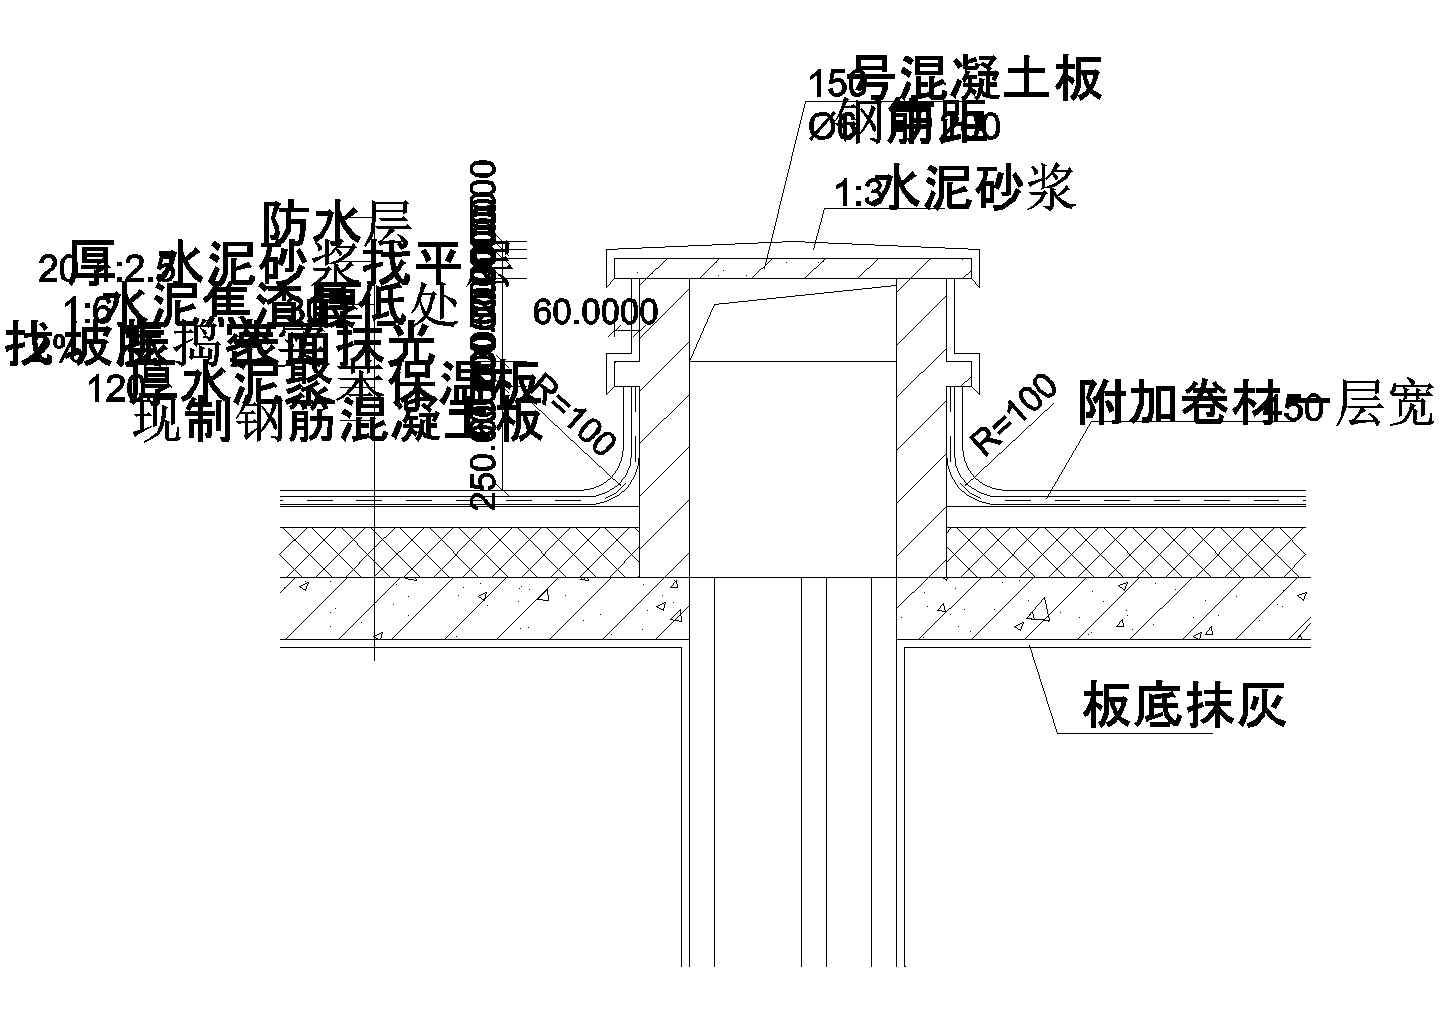 许昌市某村镇私人民用住宅楼檐口建筑设计CAD施工图